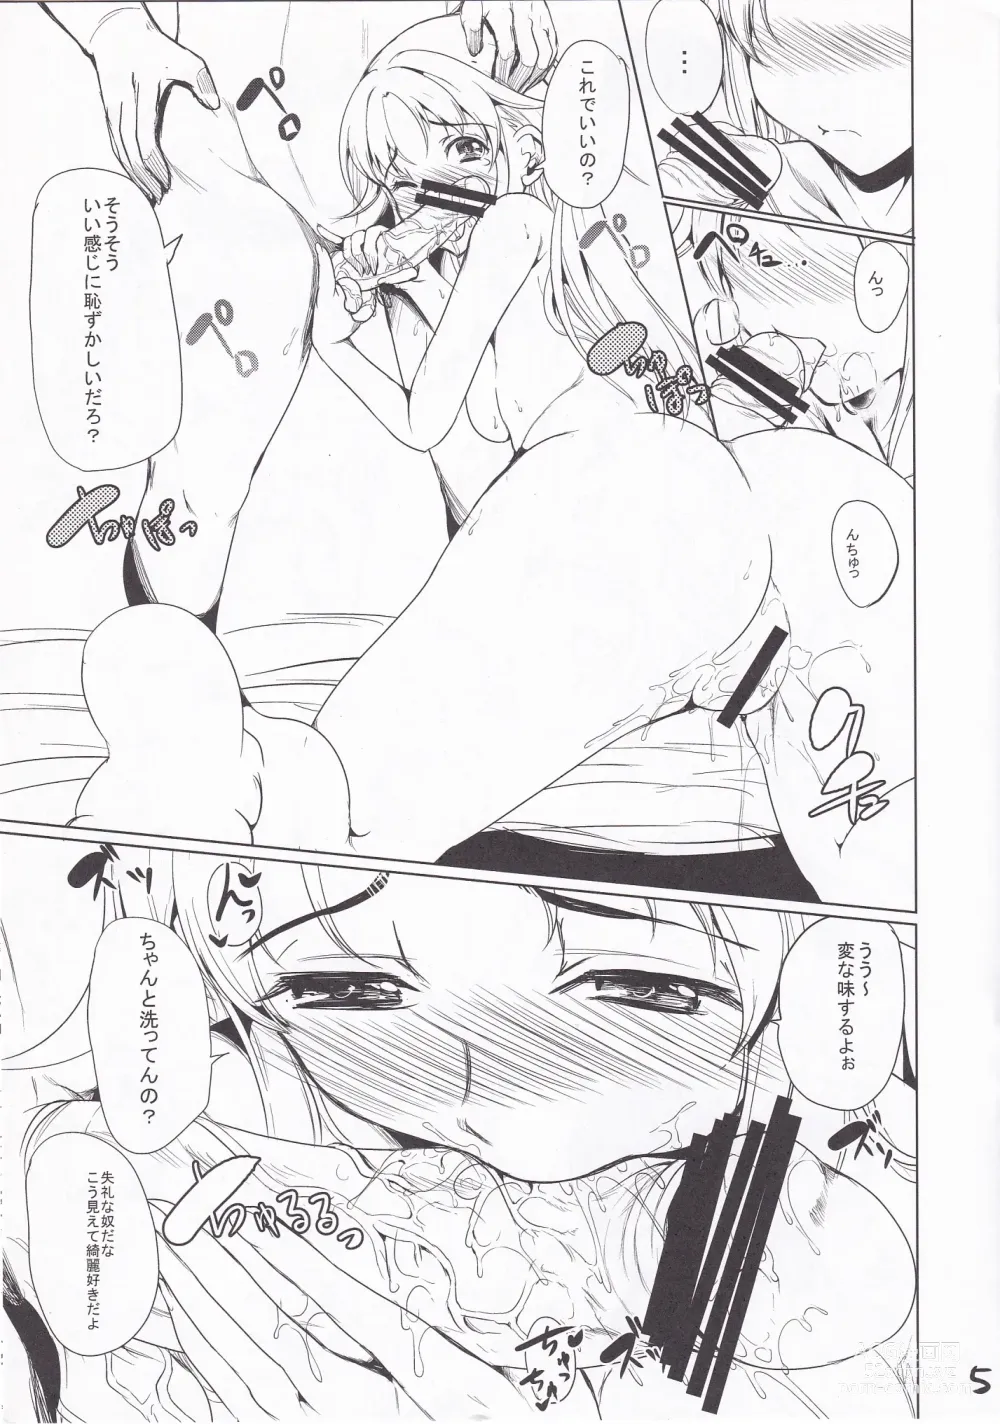 Page 4 of doujinshi Shibattari Okashi Tari